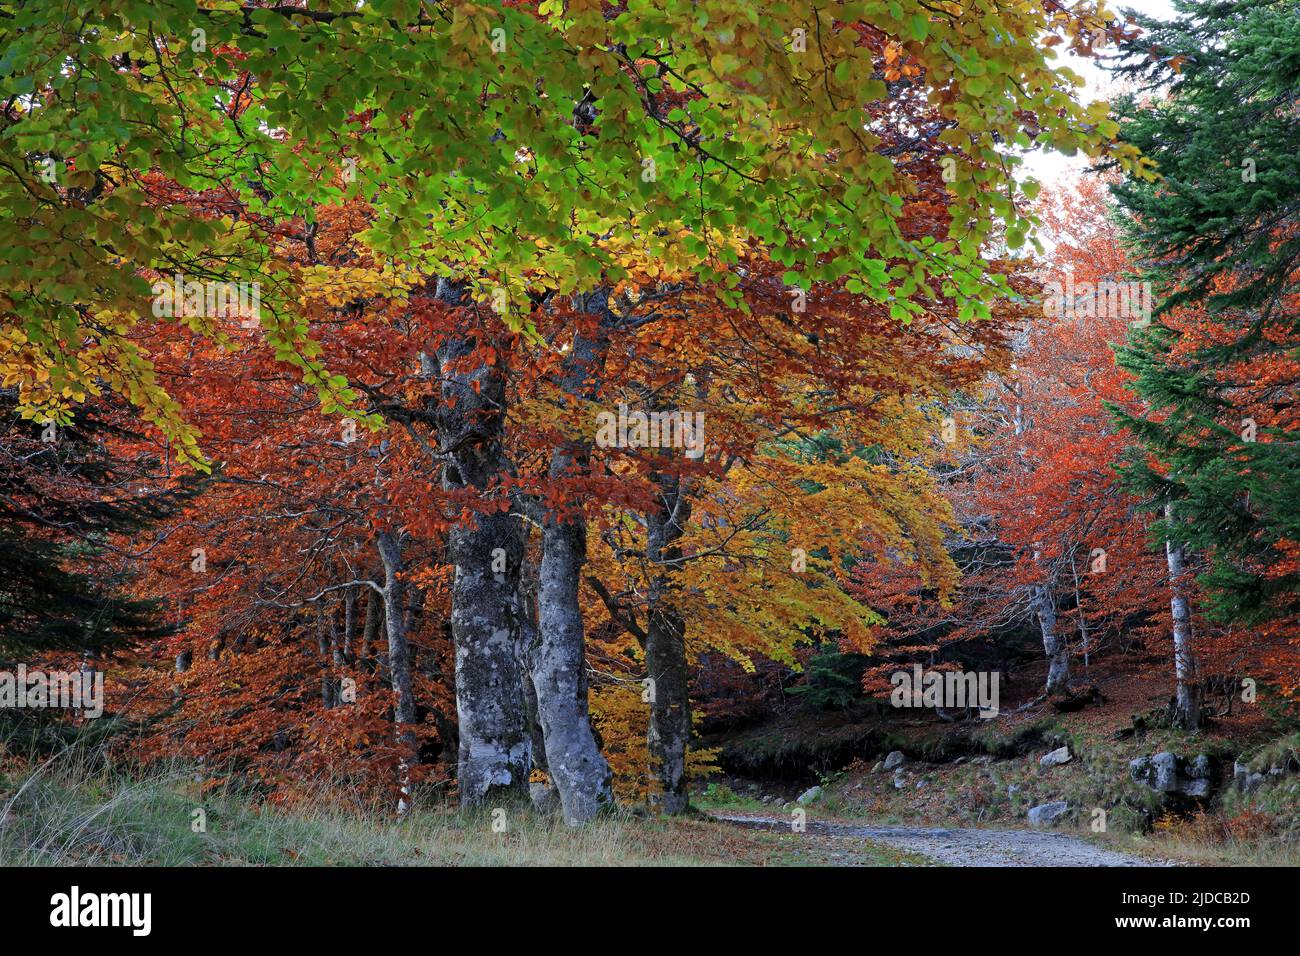 Frankreich, Lozère, Mont Lozère, als UNESCO-Weltkulturerbe eingestuft, Wald, Buchenhain im Herbst Stockfoto